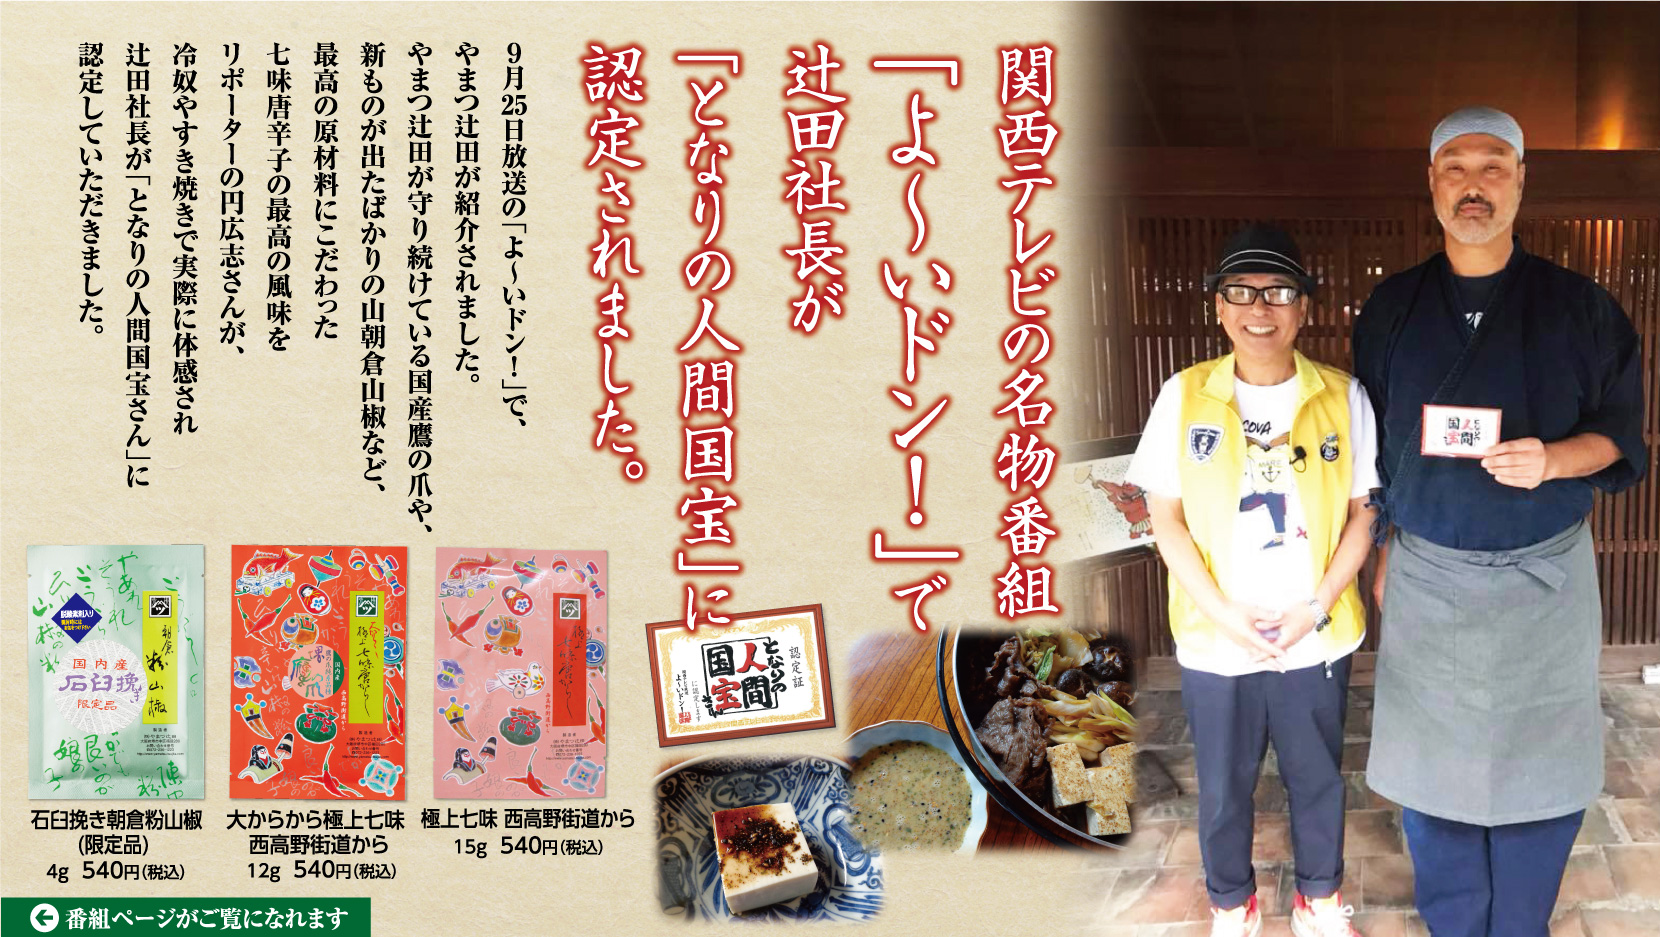 関西テレビの名物番組「よ〜いドン！」で辻田社長が「となりの人間国宝」に認定されました。